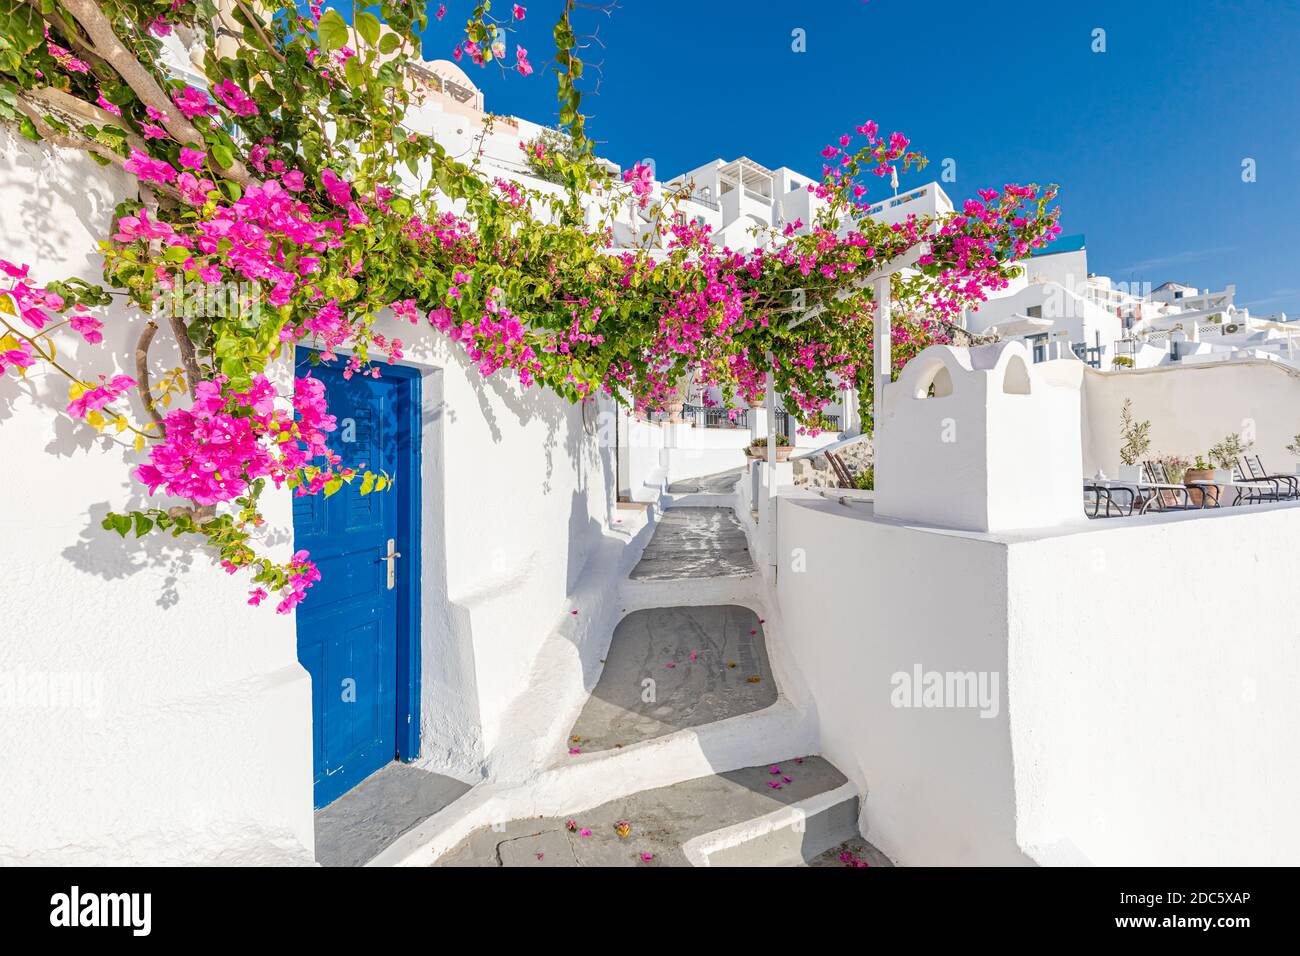 Alte blaue Tür und rosa Blumen, traditionelle griechische Architektur, Santorini Insel, Griechenland. Schöne Details der Insel Santorini, weiße Häuser, Stockfoto